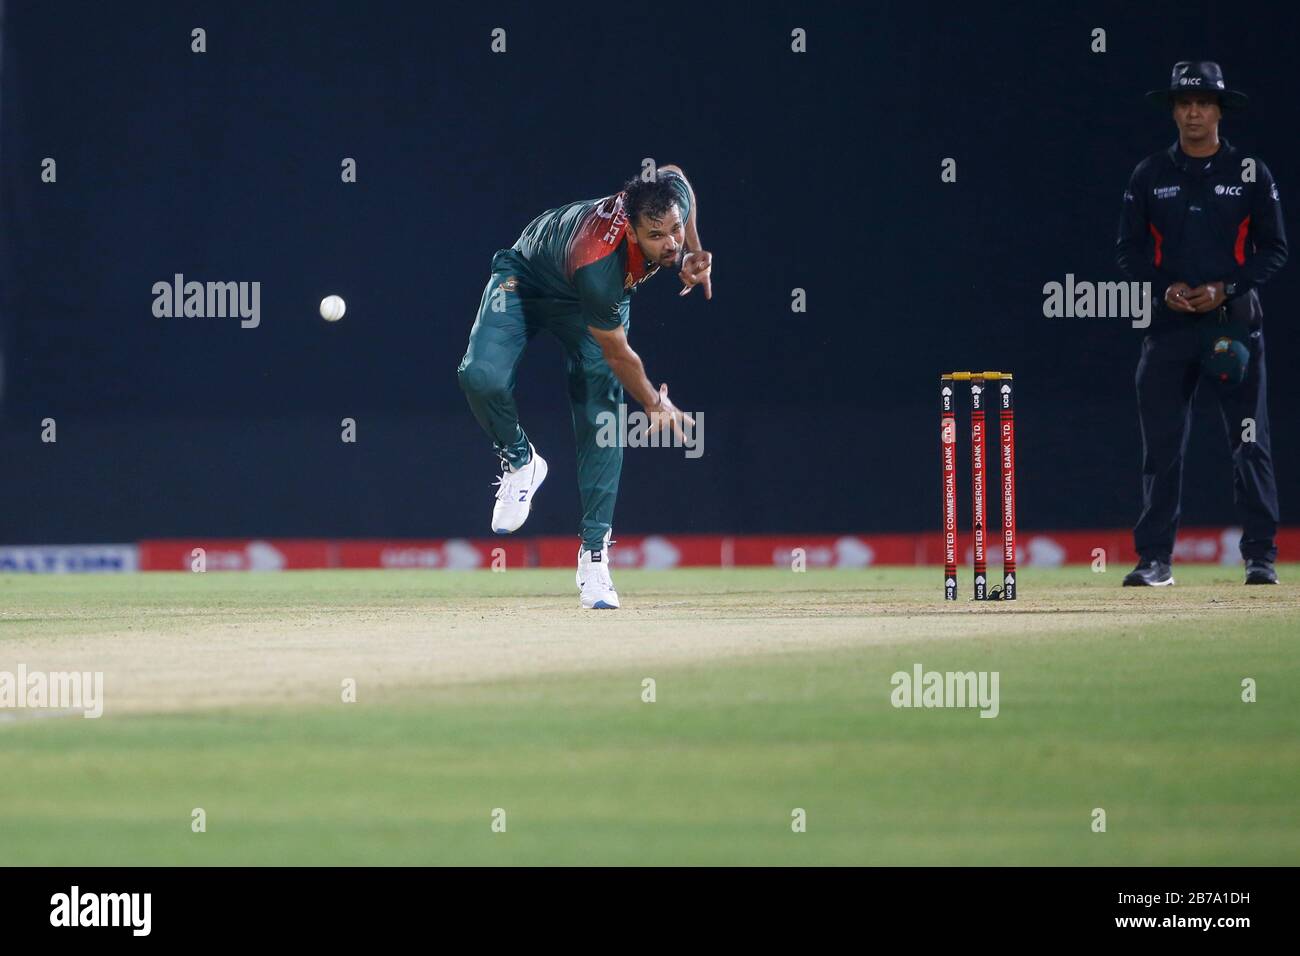 Kapitän des nationalen Cricket-Teams in Bangladesch für ODI-Match Mashrafe bin Mortaza (L) Bowl, als er von Captaincy zurücktritt, nachdem er das dritte ODI gegen Z gewonnen hatte Stockfoto